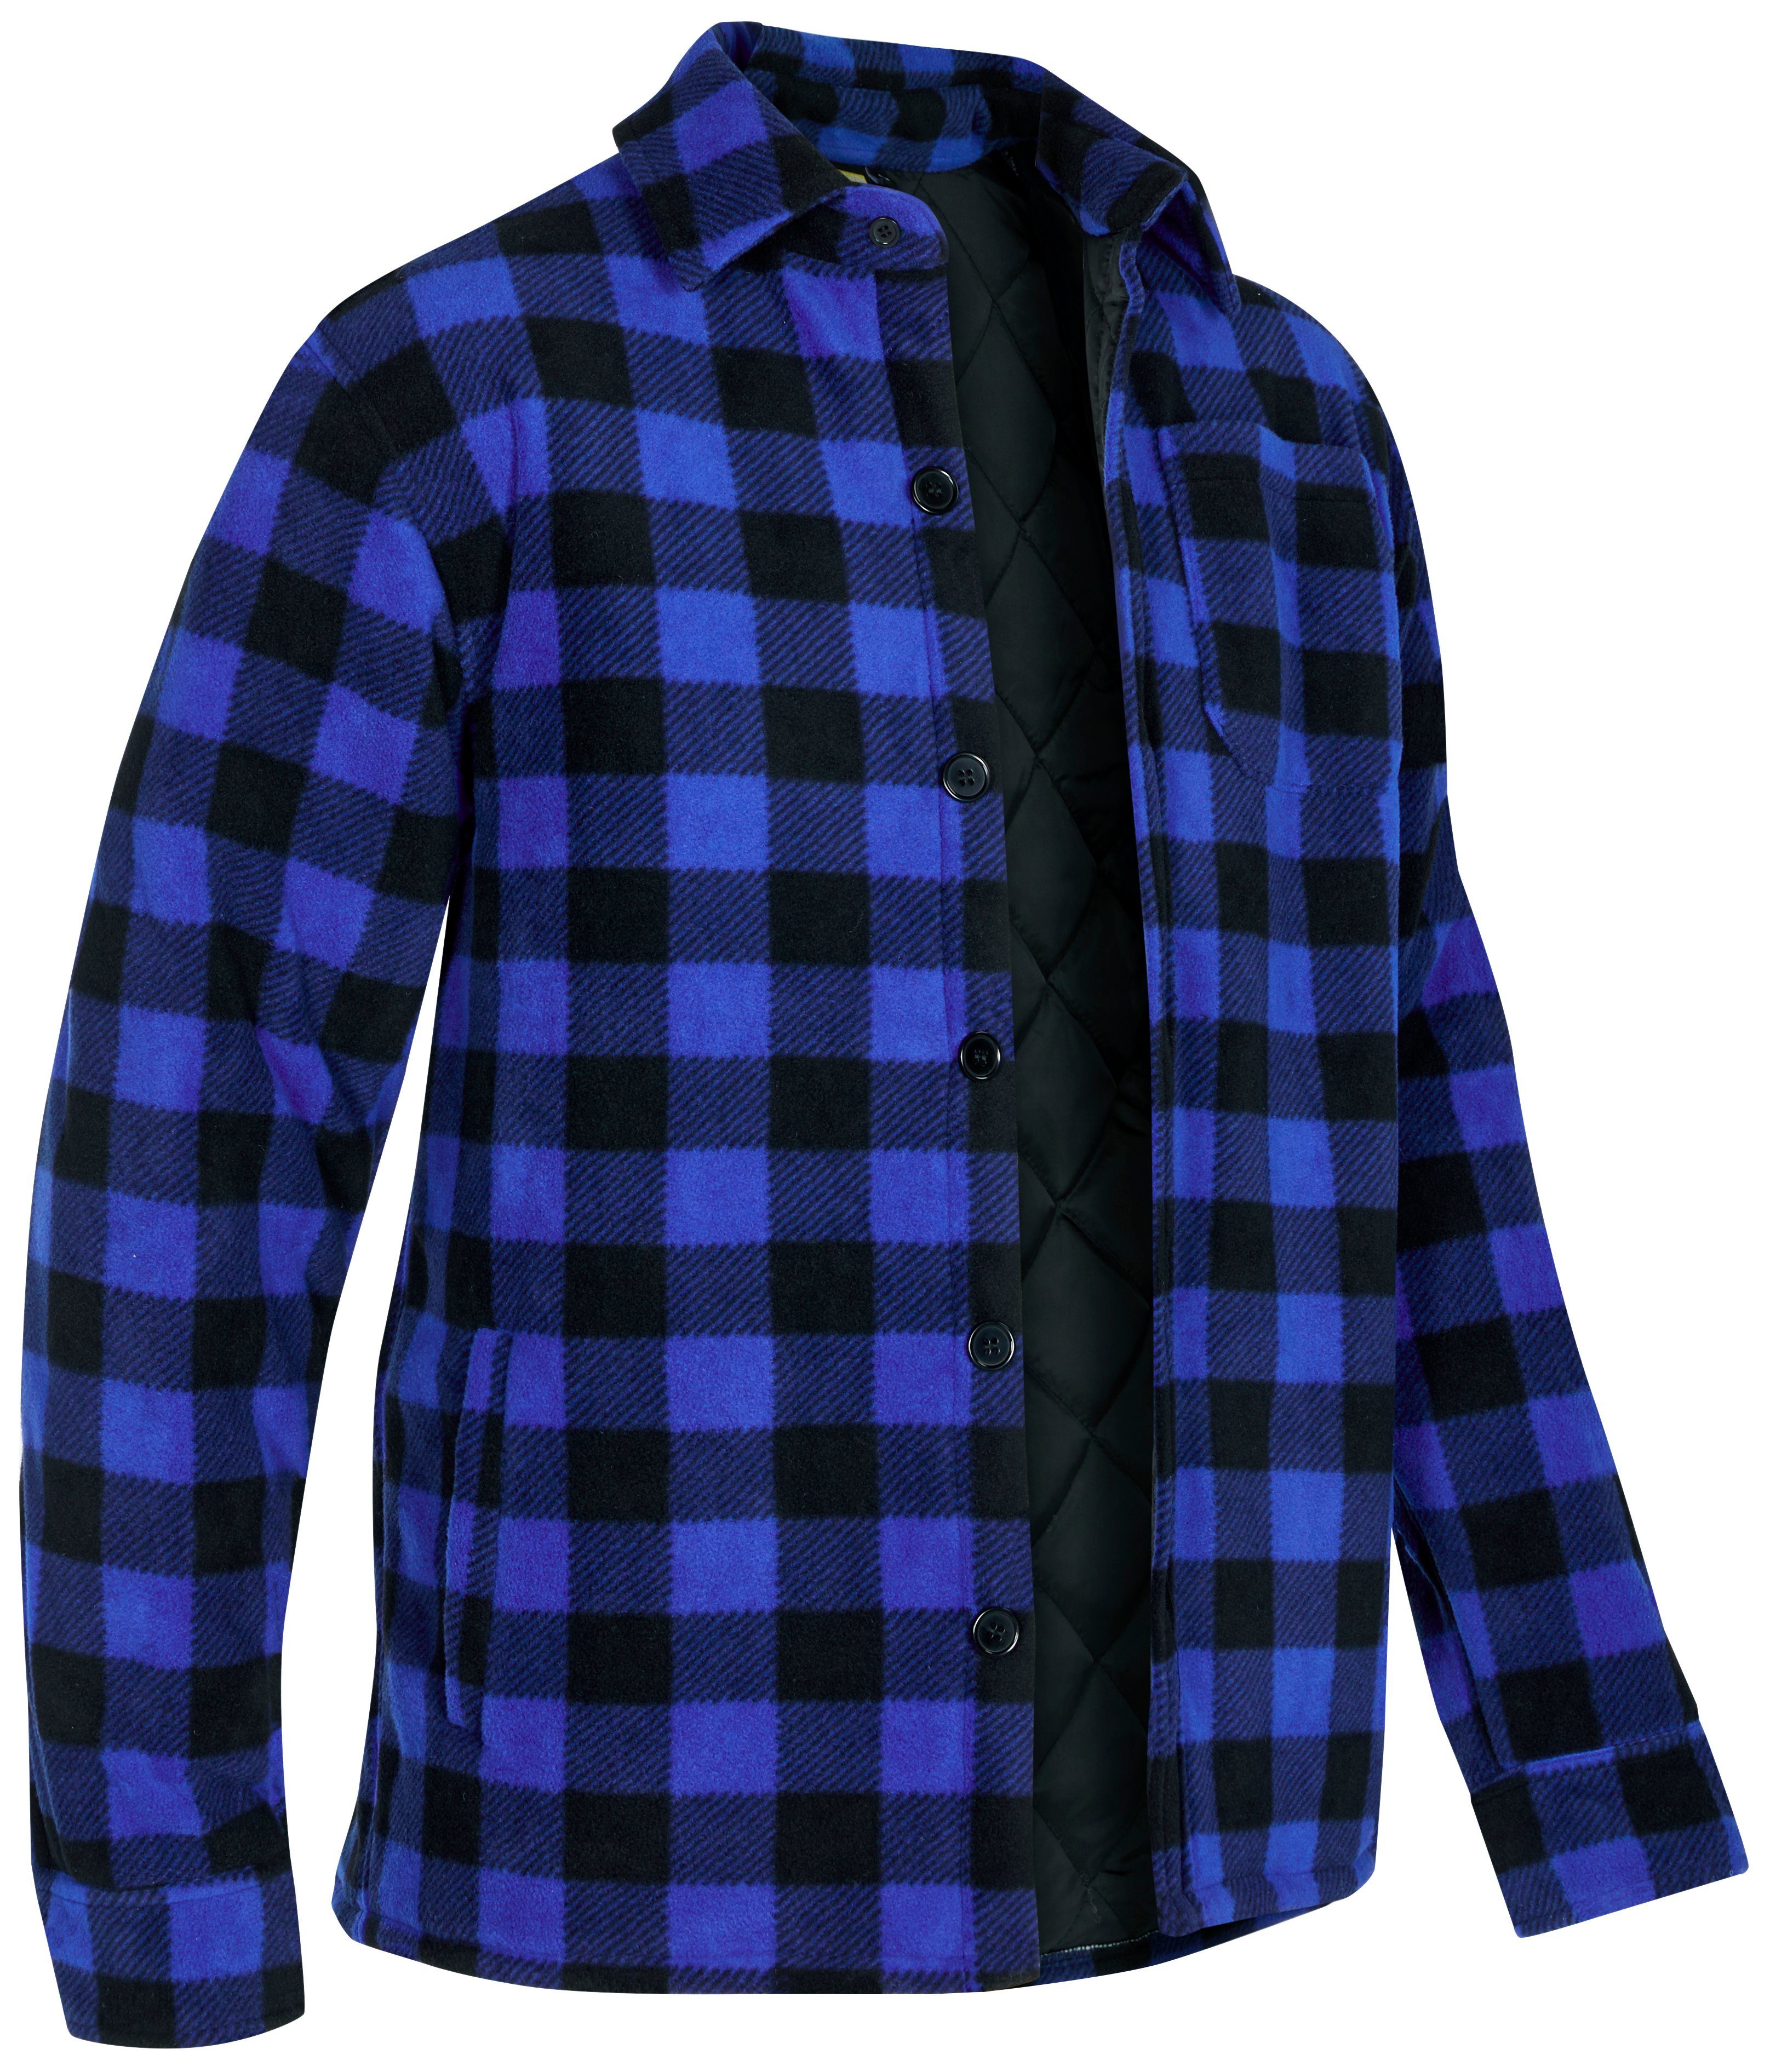 Northern Country Flanellhemd (als Jacke warm Rücken, offen mit Flanellstoff mit blau-schwarz verlängertem Hemd zu Taschen, tragen) gefüttert, oder zugeknöpft 5